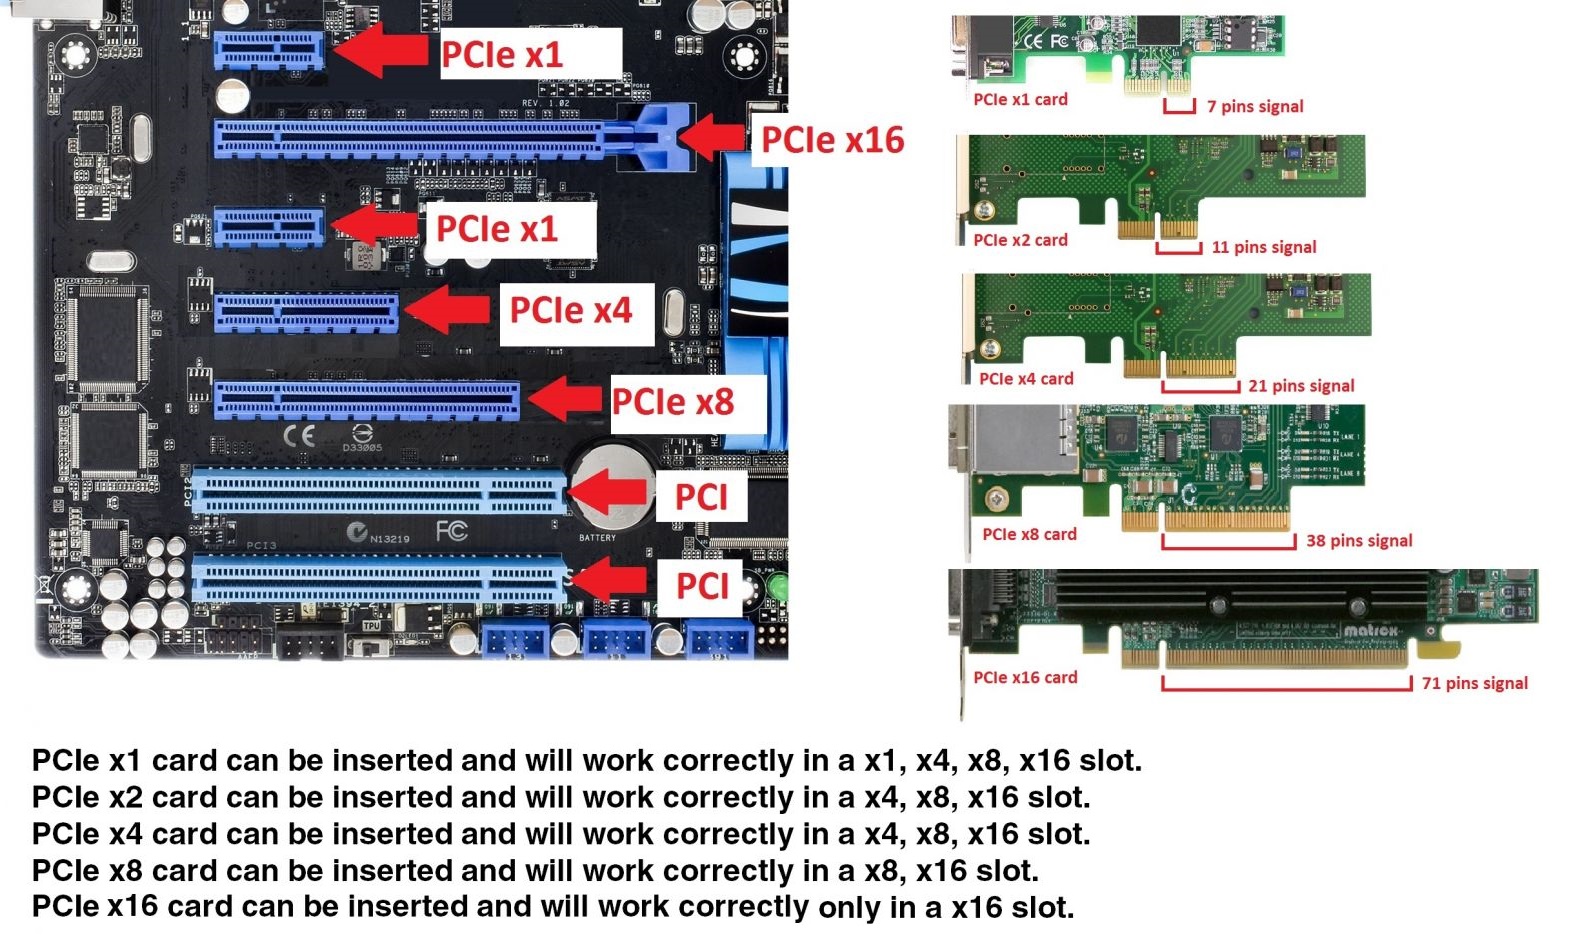 Ổ đĩa NVMe còn được gọi là SSD PCI-Express (PCIe) vì chúng sử dụng bus PCI-Express (PCIe) để truyền dữ liệu